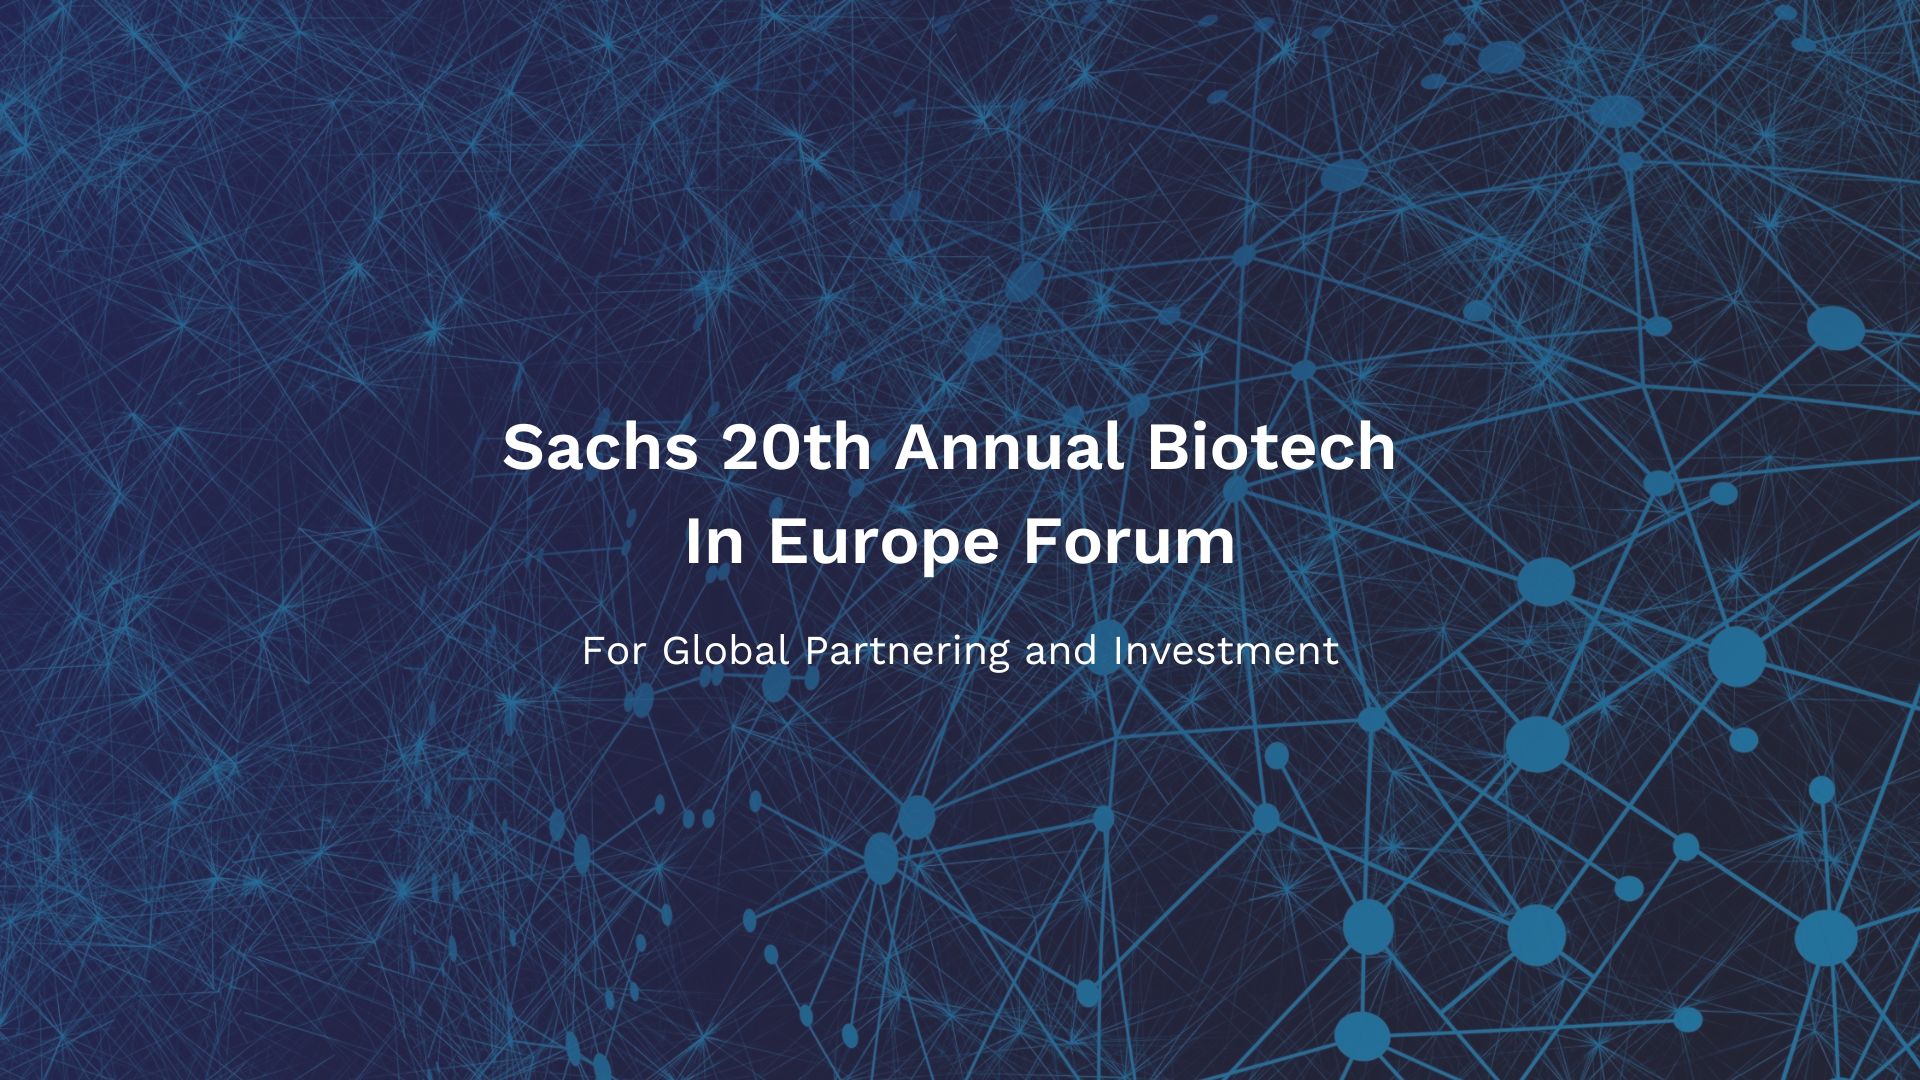 Sachs 20th Annual Biotech